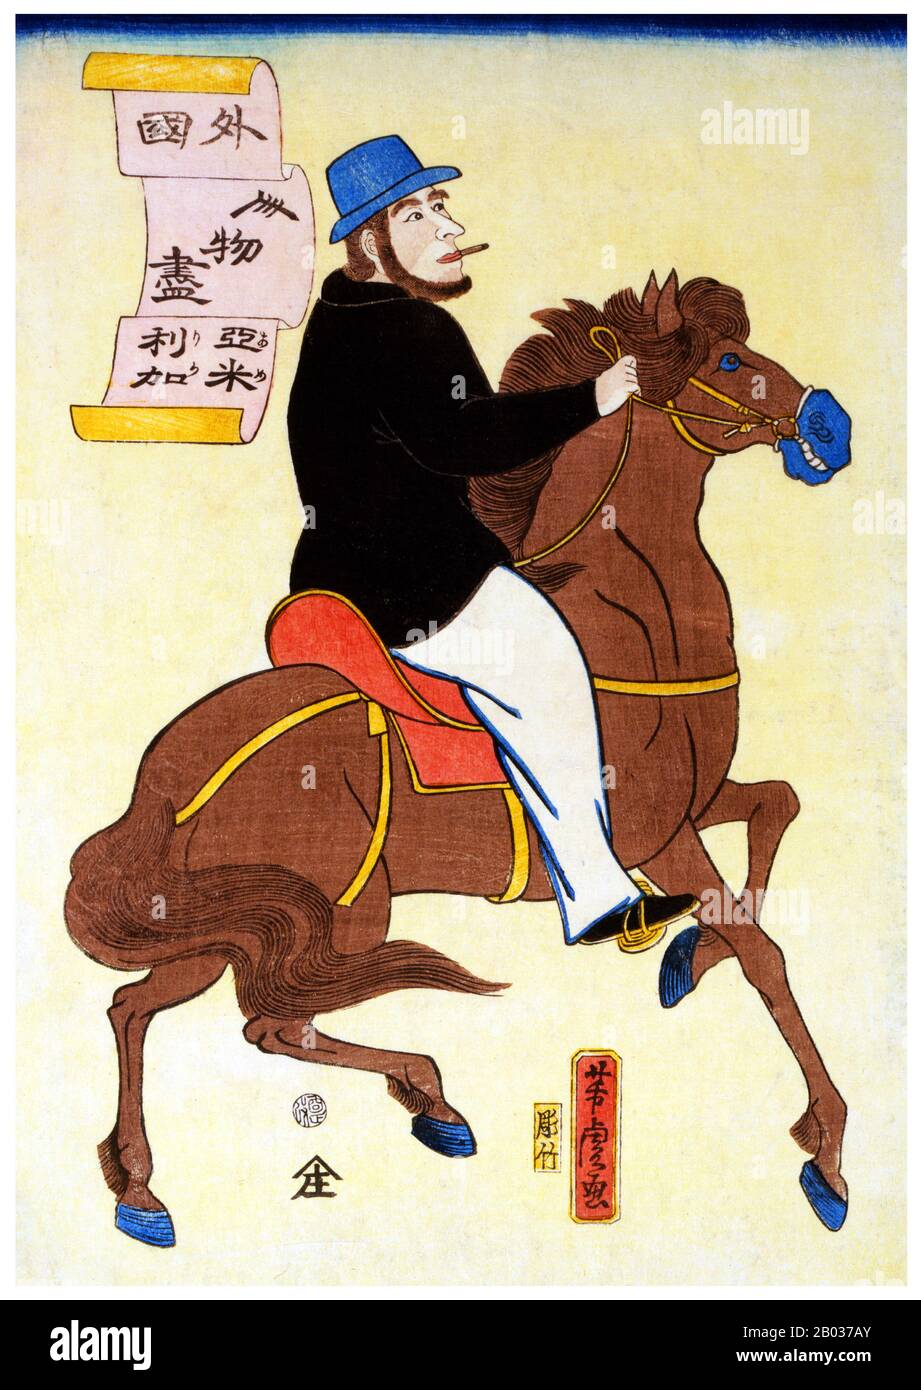 Stampa di legno giapponese che mostra un uomo americano che fuma una sigaretta mentre a cavallo. Utagawa Yoshitora è stato un designer di stampe di blocchi di legno giapponesi ukiyo-e e un illustratore di libri e giornali che è stato attivo da circa 1850 a circa 1880. È nato a Edo (Tokyo moderna), ma non si conosce né la data di nascita né la data di morte. Fu il più antico allievo di Utagawa Kuniyoshi che eccelleva nelle stampe di guerrieri, attori kabuki, belle donne e stranieri (Yokohama-e). Foto Stock